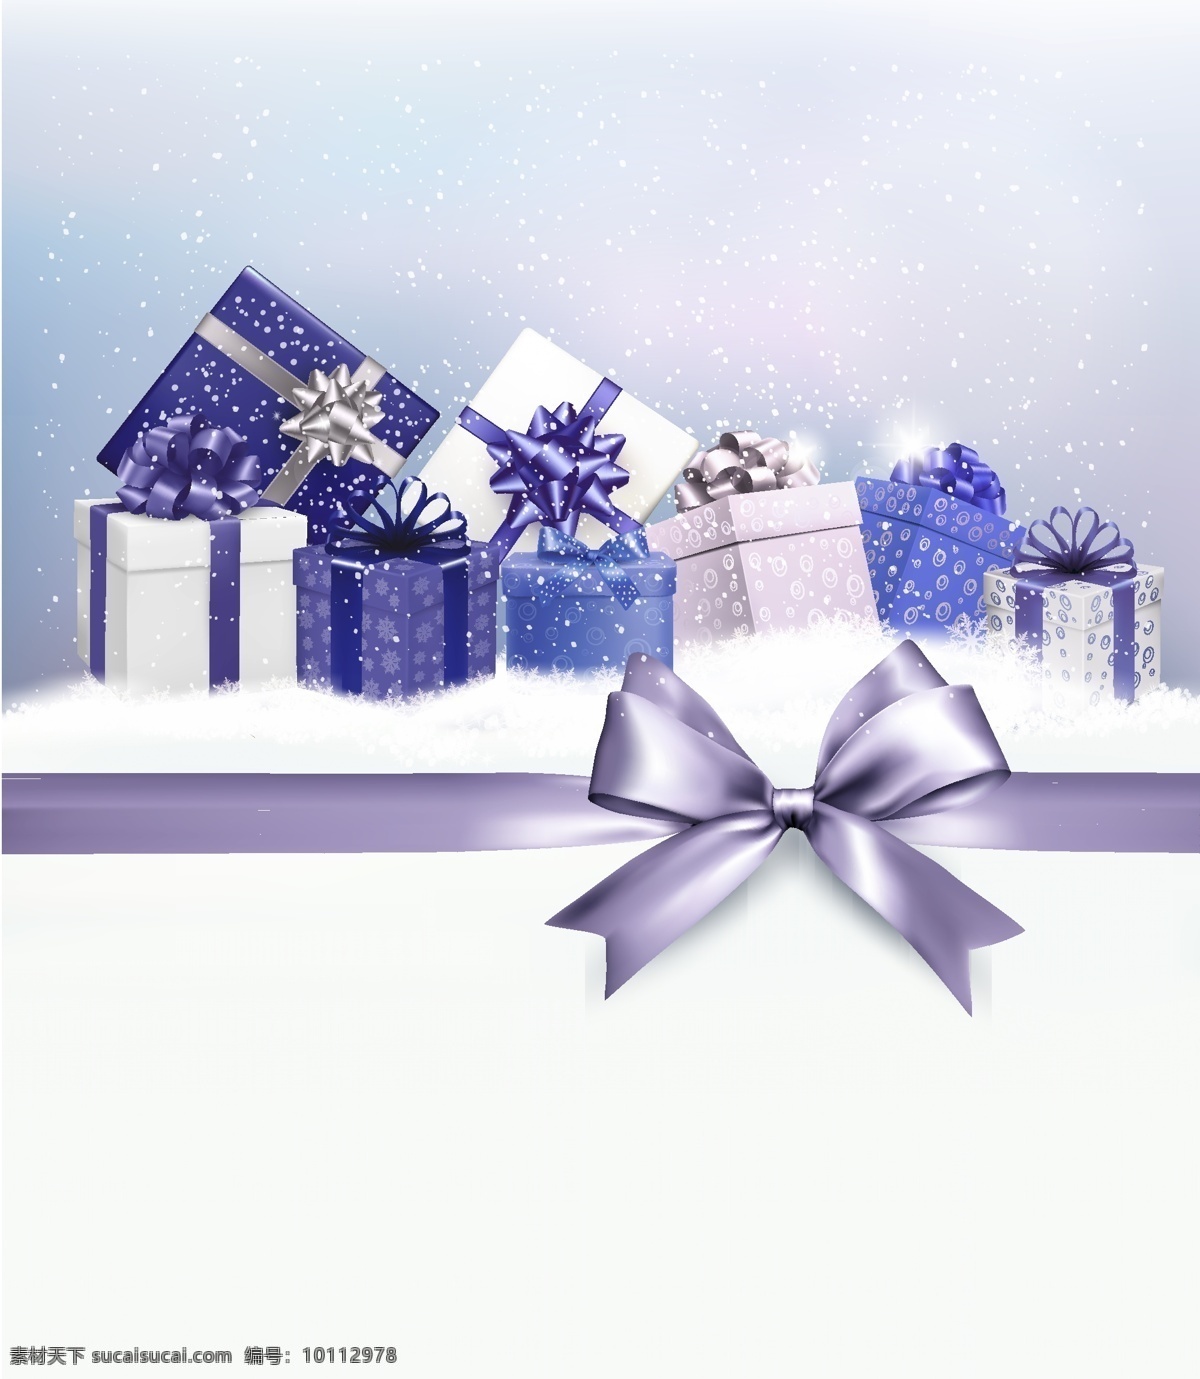 精美 紫色 礼盒 圣诞贺卡 紫色礼盒贺卡 精美紫色礼盒 积雪 雪花 丝带 礼包 圣诞节 新年快乐 merry christmas 礼物 蝴蝶结 创意图